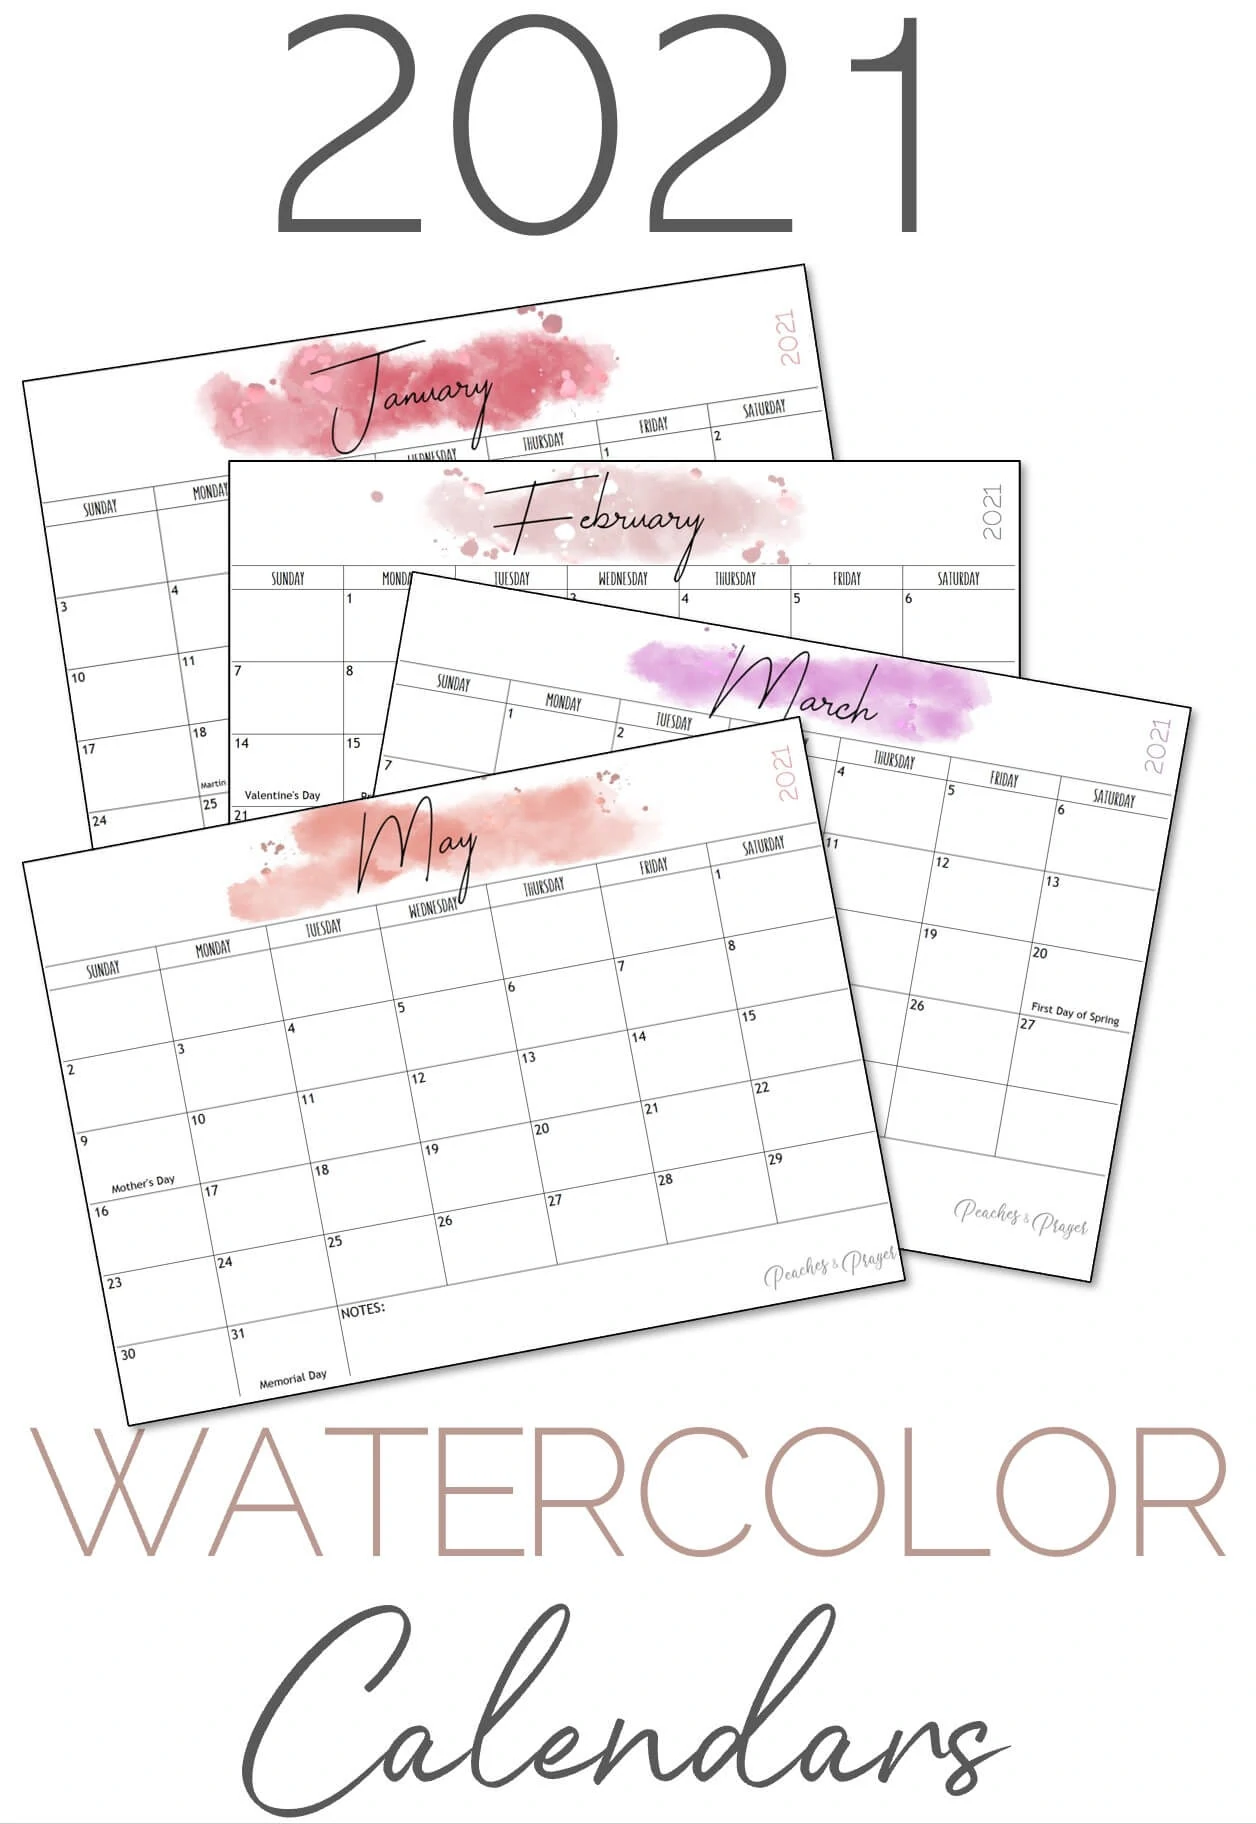 2021 Watercolor Calendars